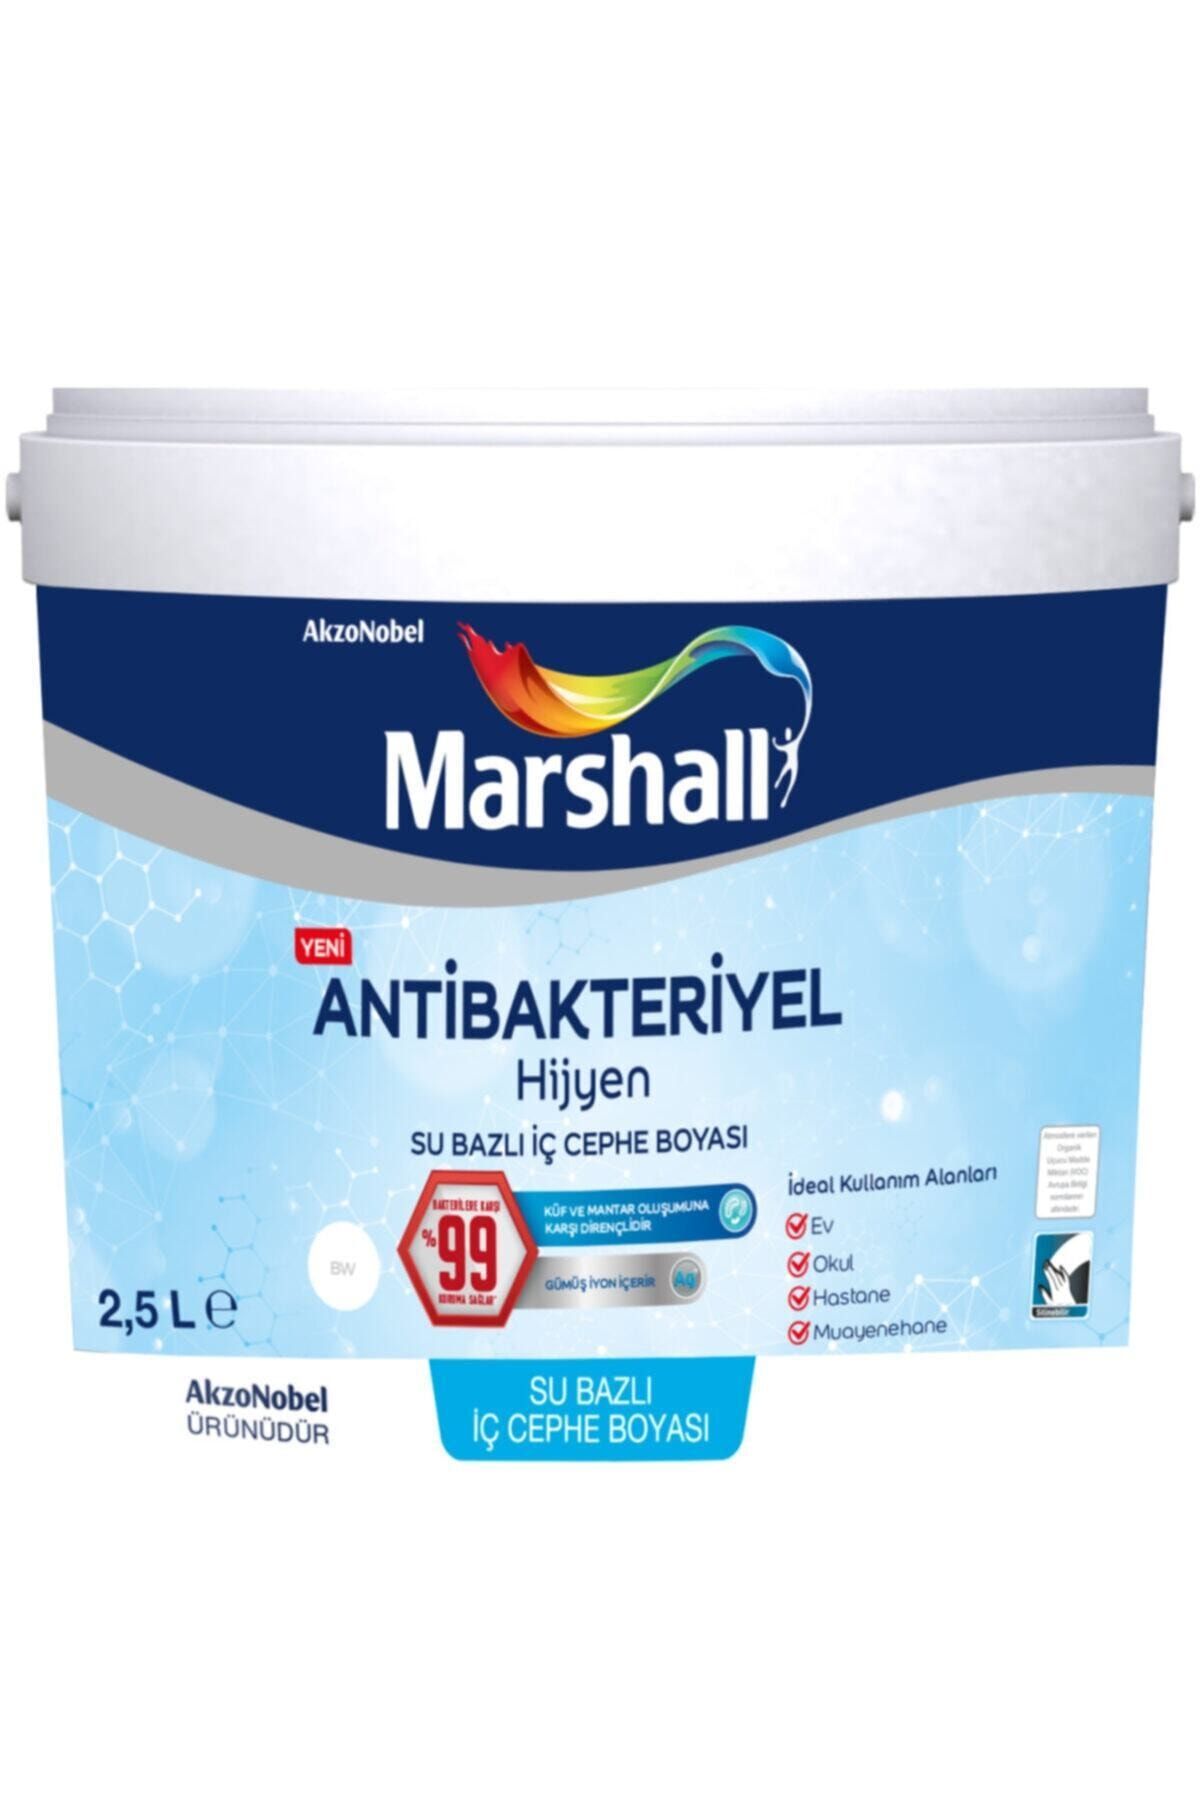 Marshall Antibakteriyel Hijyen Iç Cephe Duvar Boyası 2,5 Lt Keçe